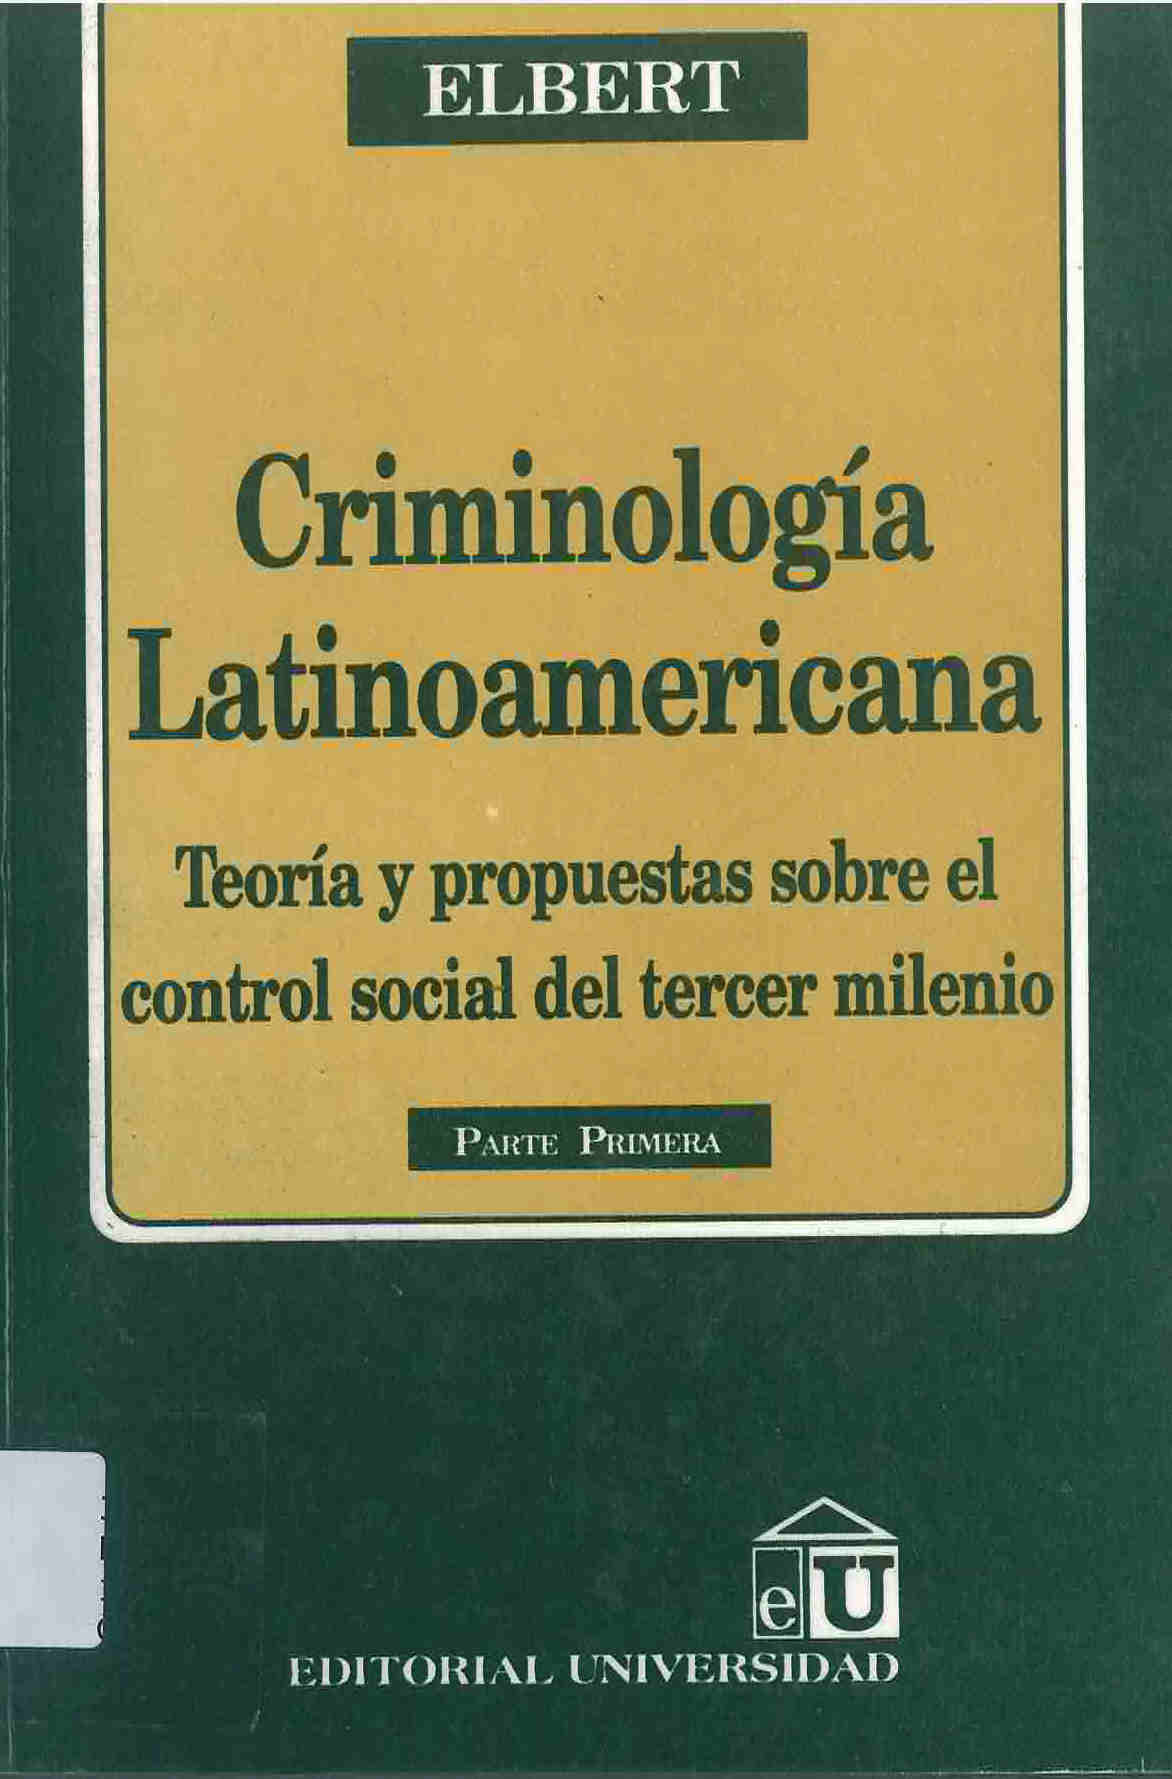 Criminología latinoamericana : teoría y propuestas sobre el control social del tercer milenio